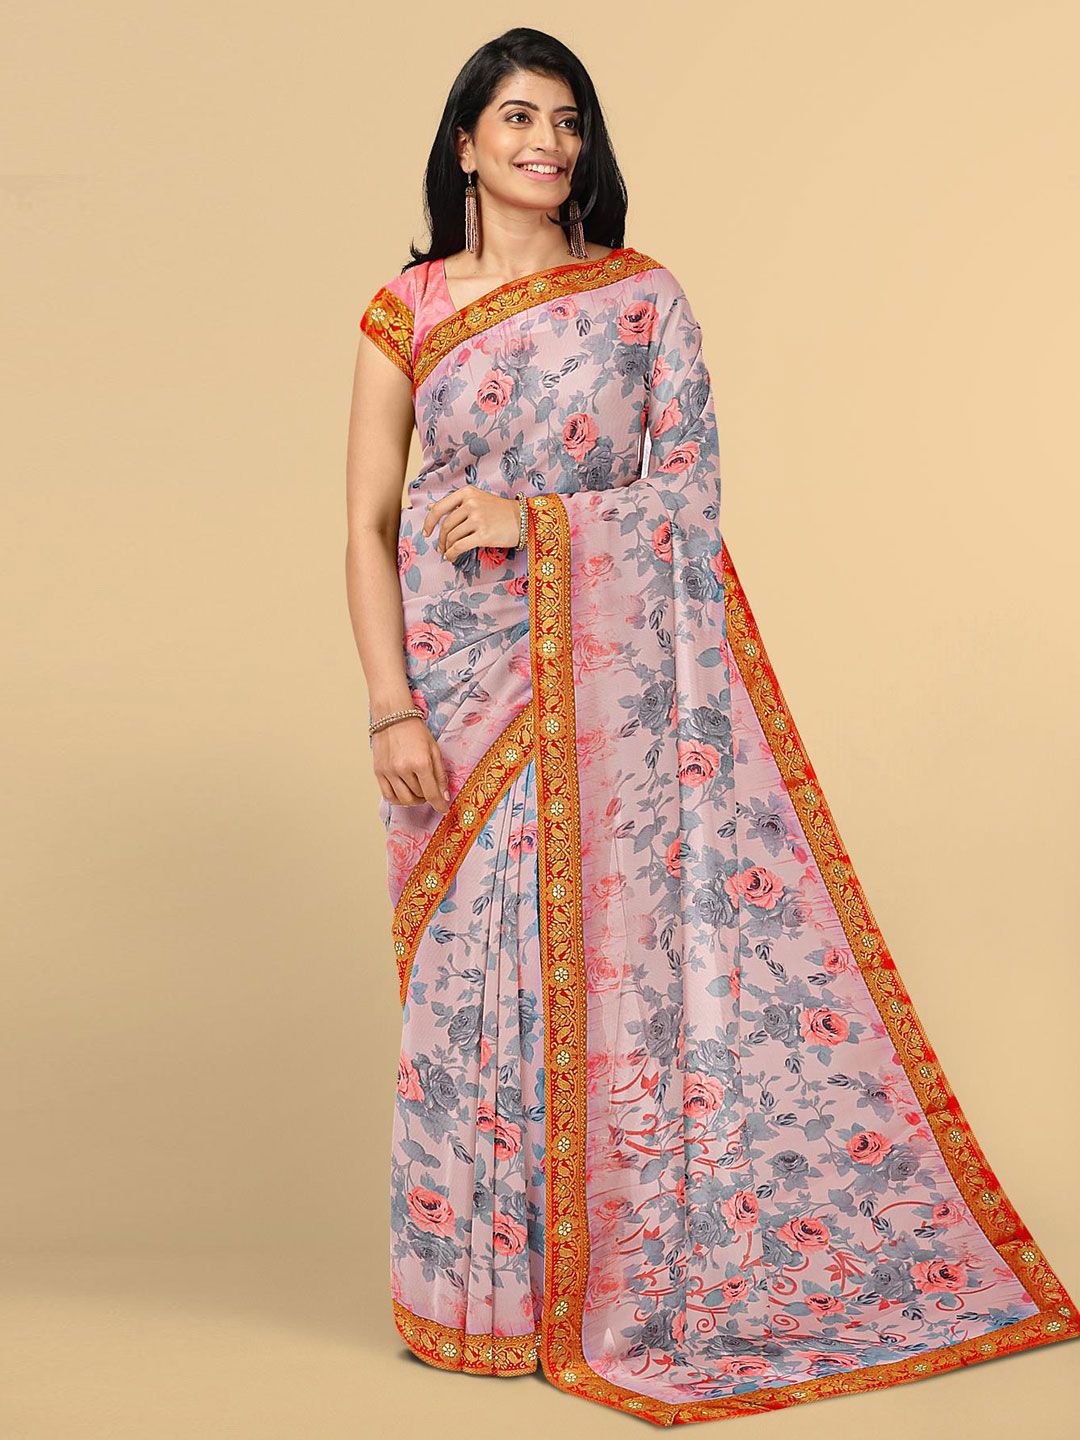 Kalamandir Pink & Grey Floral Saree Price in India